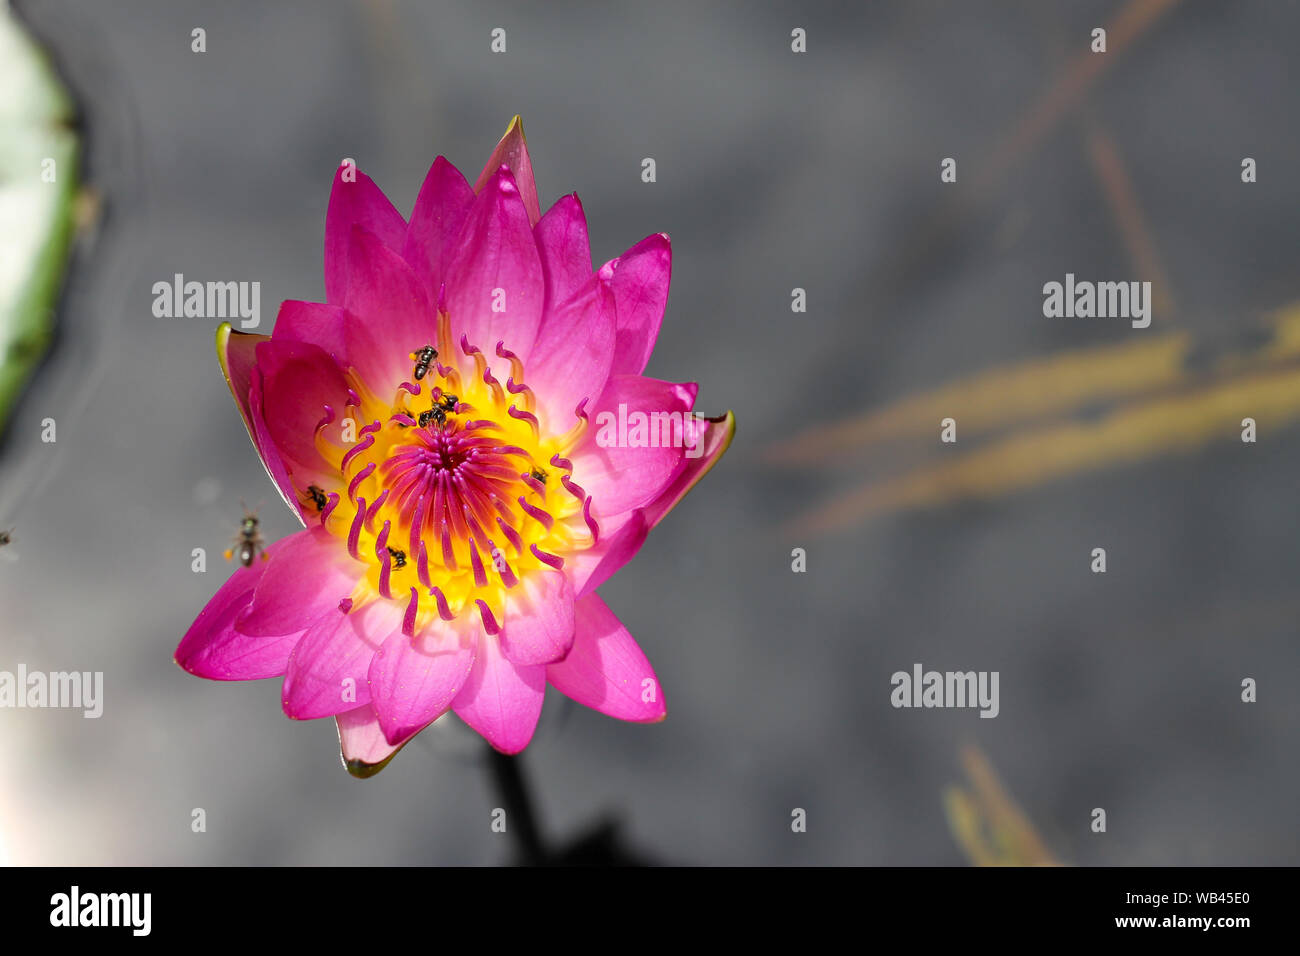 Beau nénuphar rose ou fleur de lotus Perry's Orange au coucher du soleil.  Nymphaea se reflète dans l'eau. Soft arrière-plan flou de feuilles d'un lo  Photo Stock - Alamy